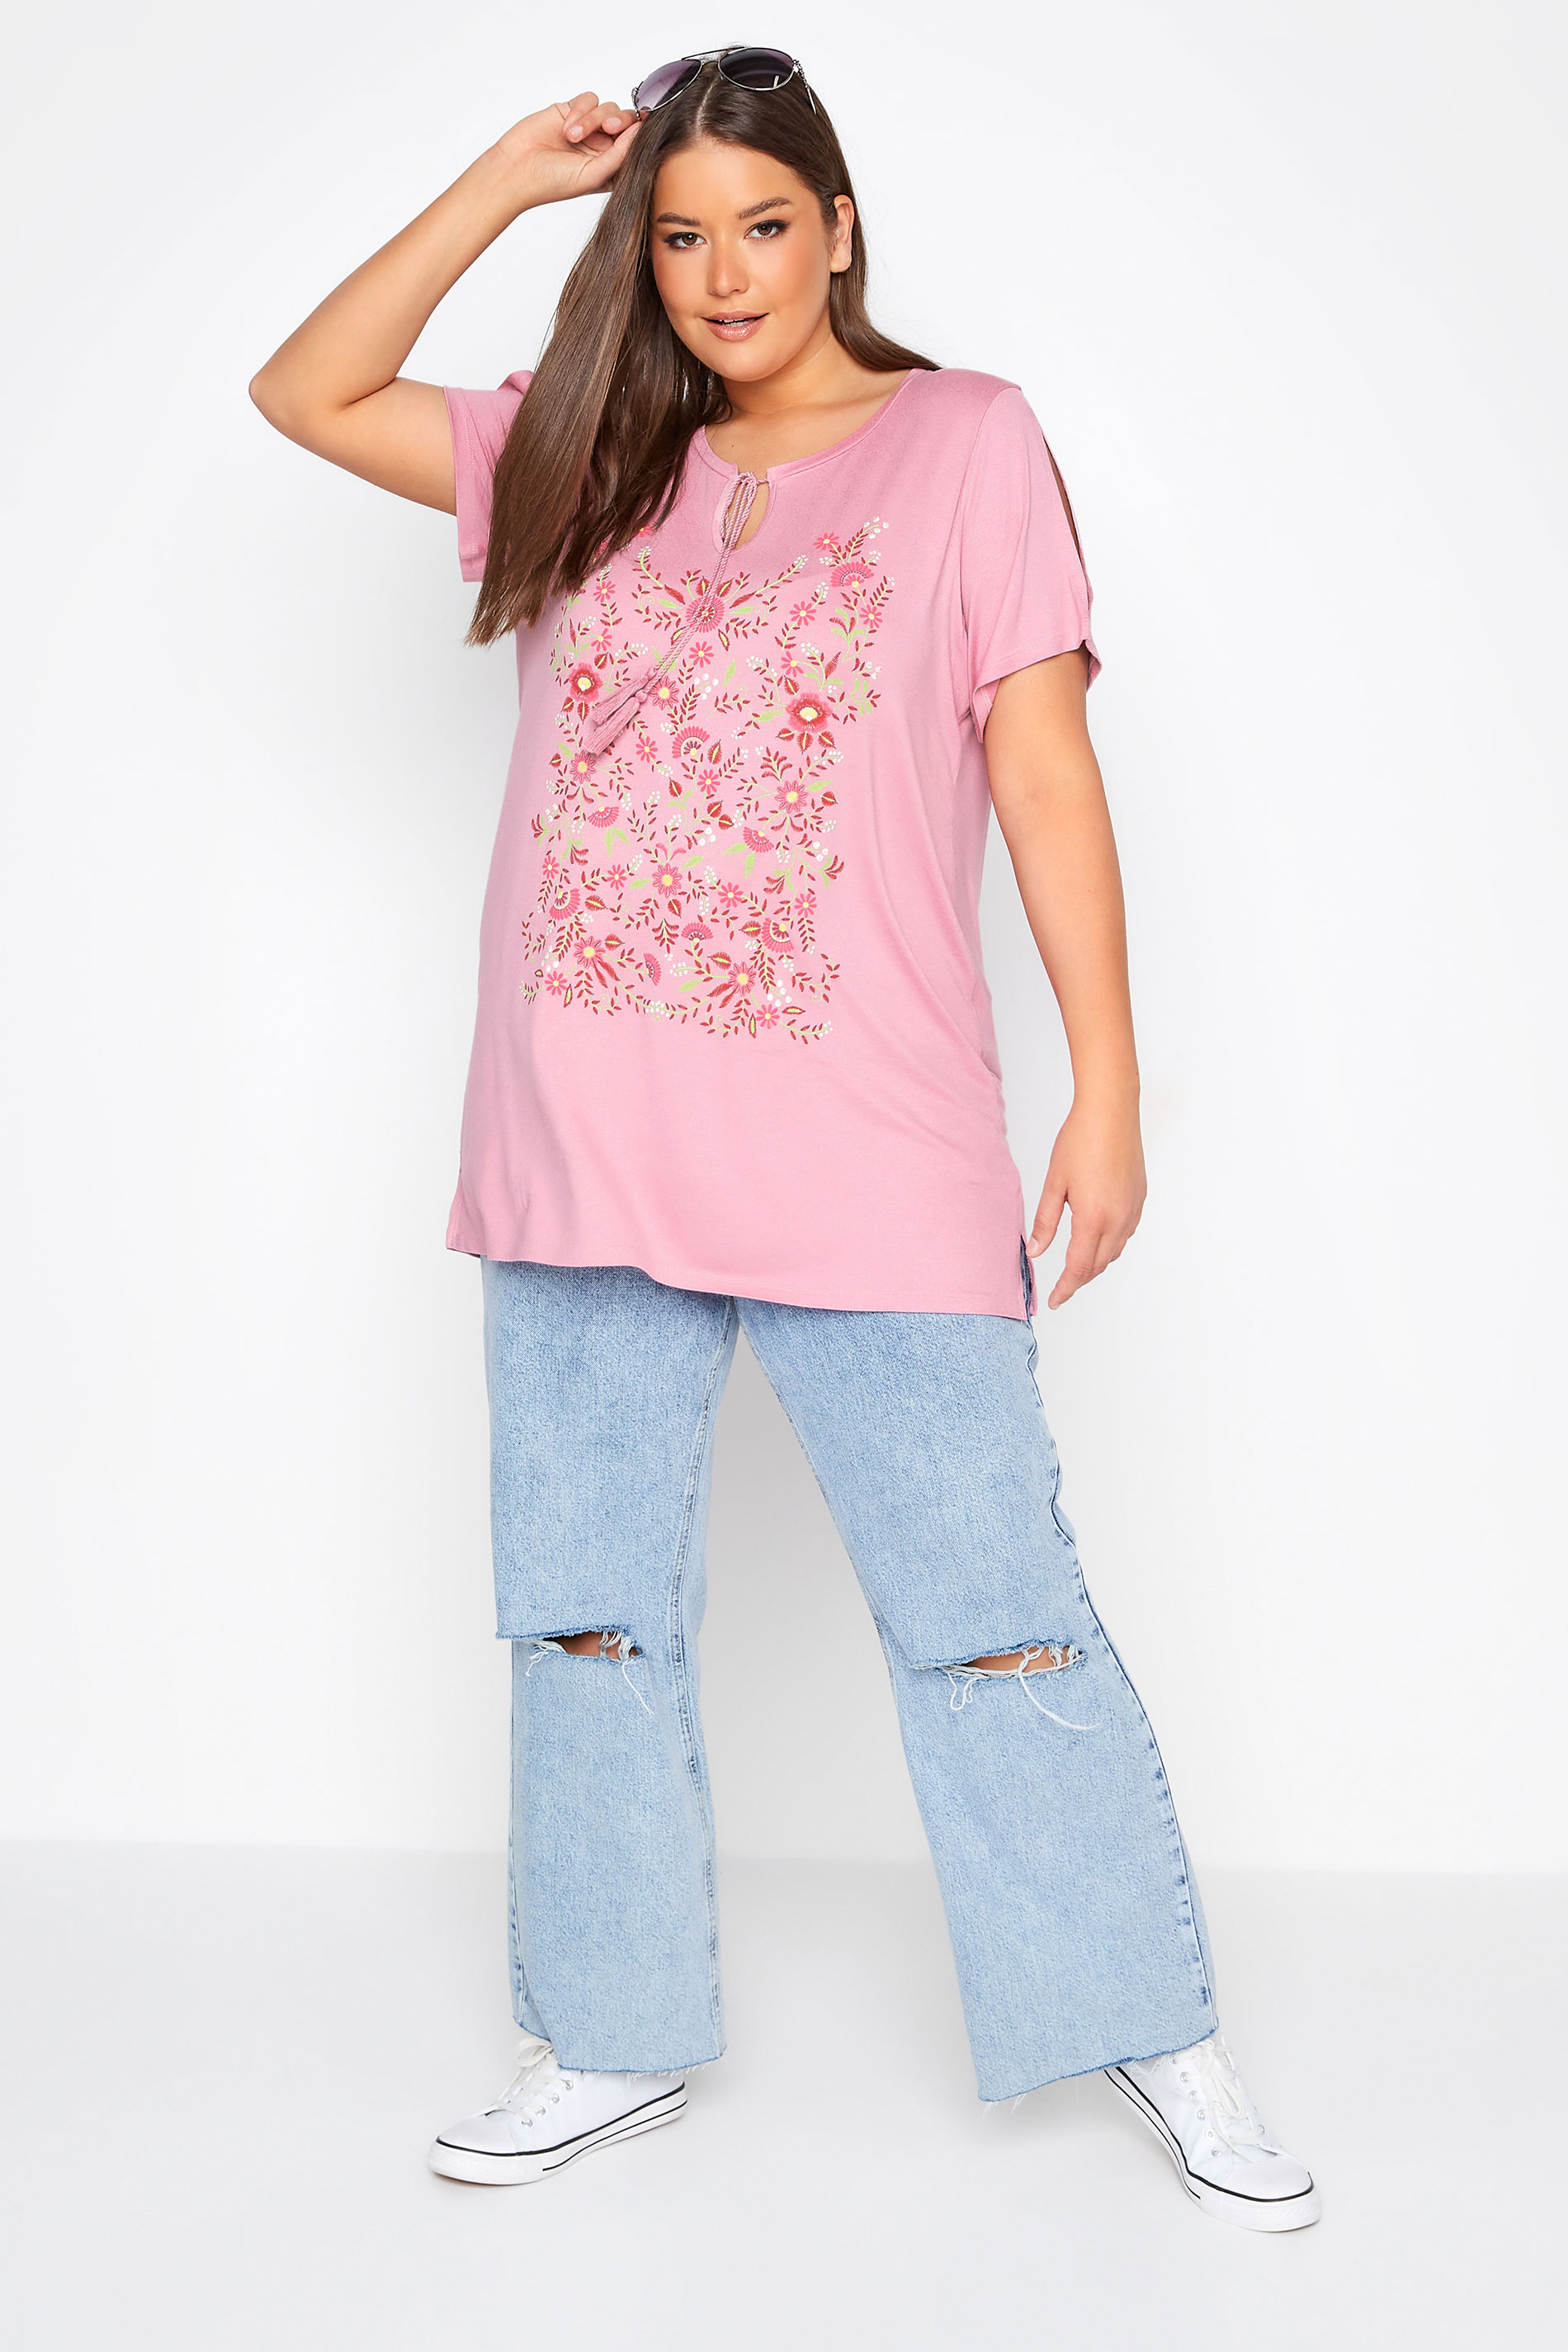 Grande taille  Tops Grande taille  T-Shirts | T-Shirt Rose Design Floral Manches Découpées - JG00849